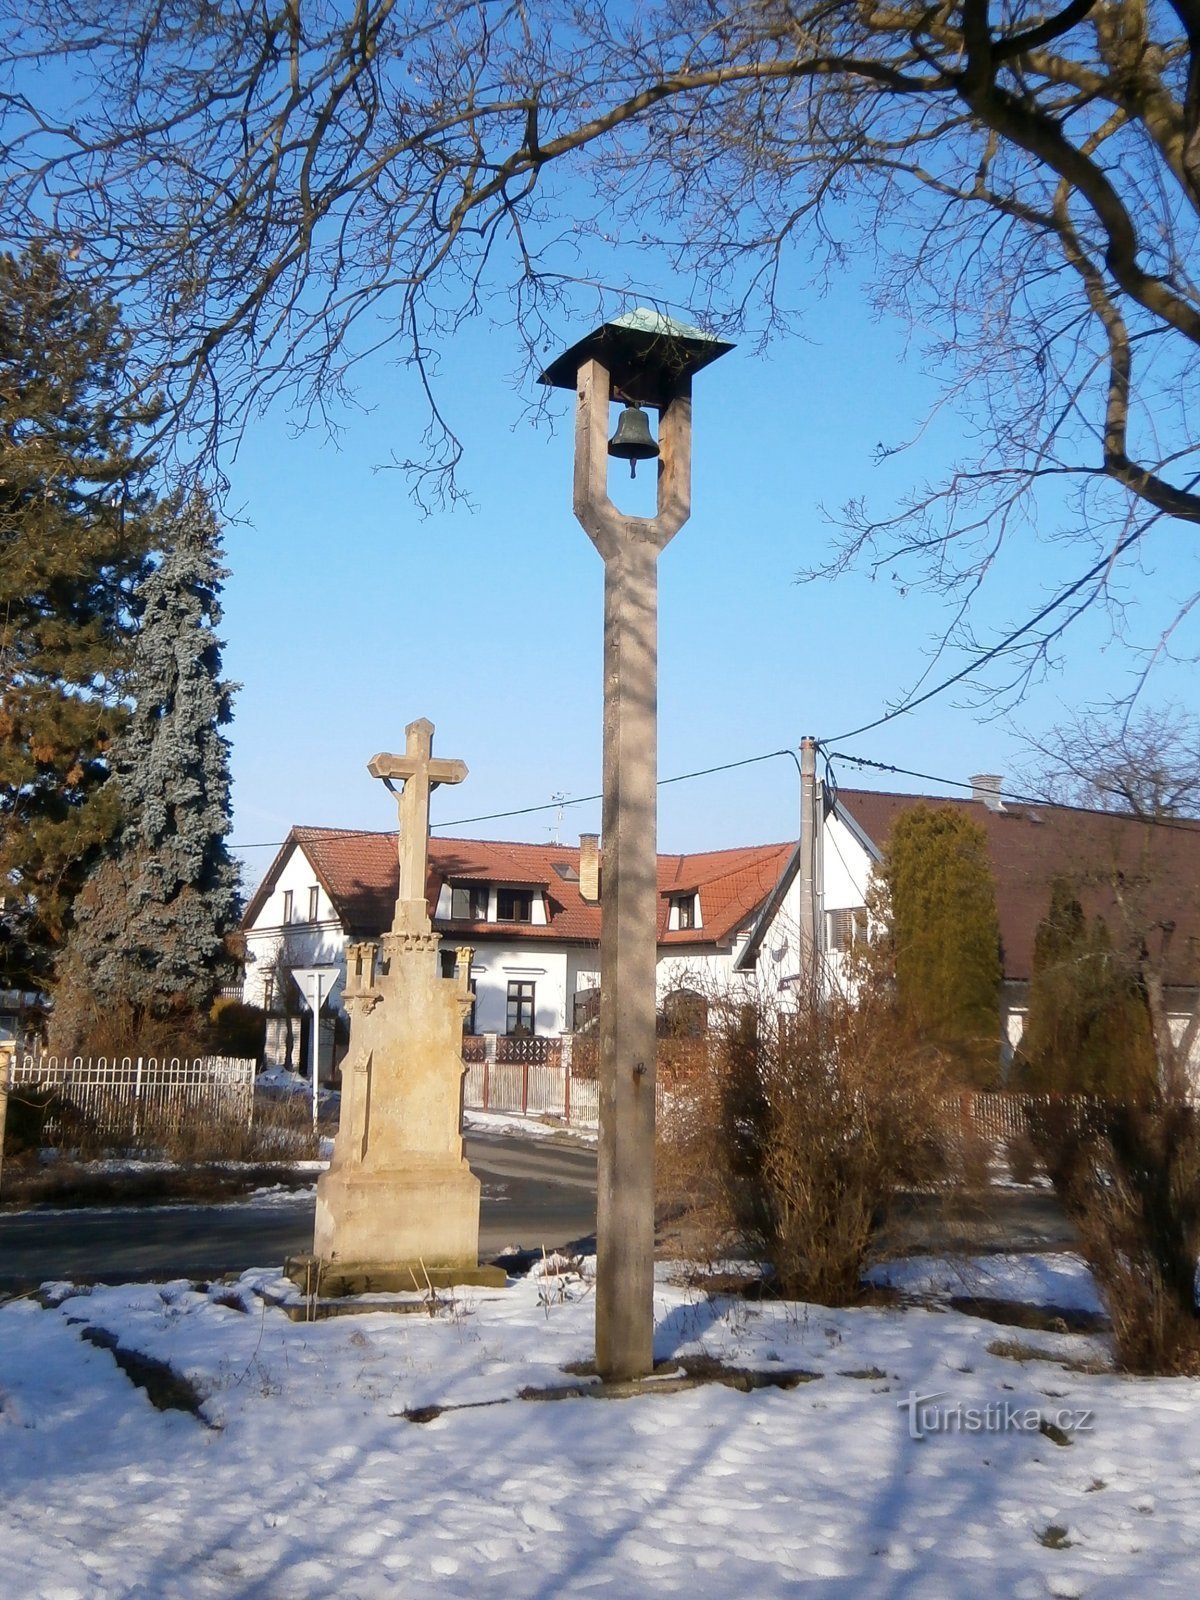 Roudnička の鐘楼と十字架 (Hradec Králové、14.2.2017 年 XNUMX 月 XNUMX 日)